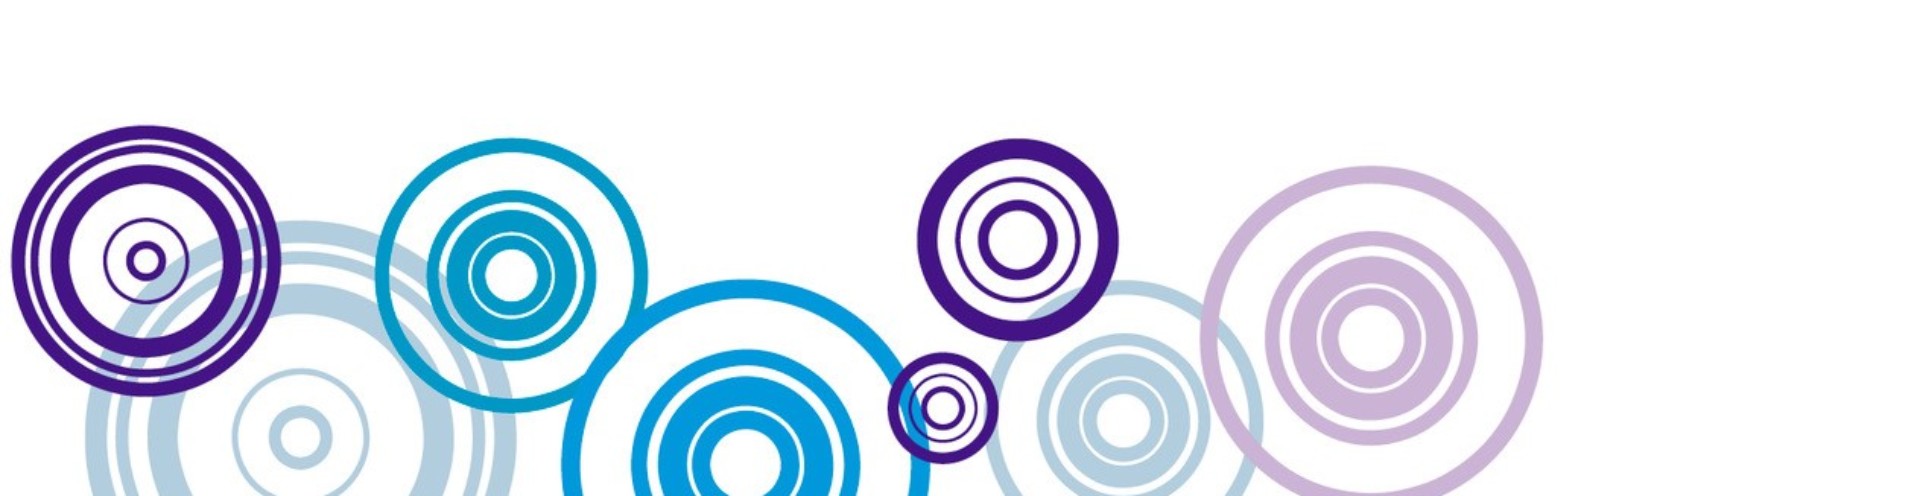 Circles logo.